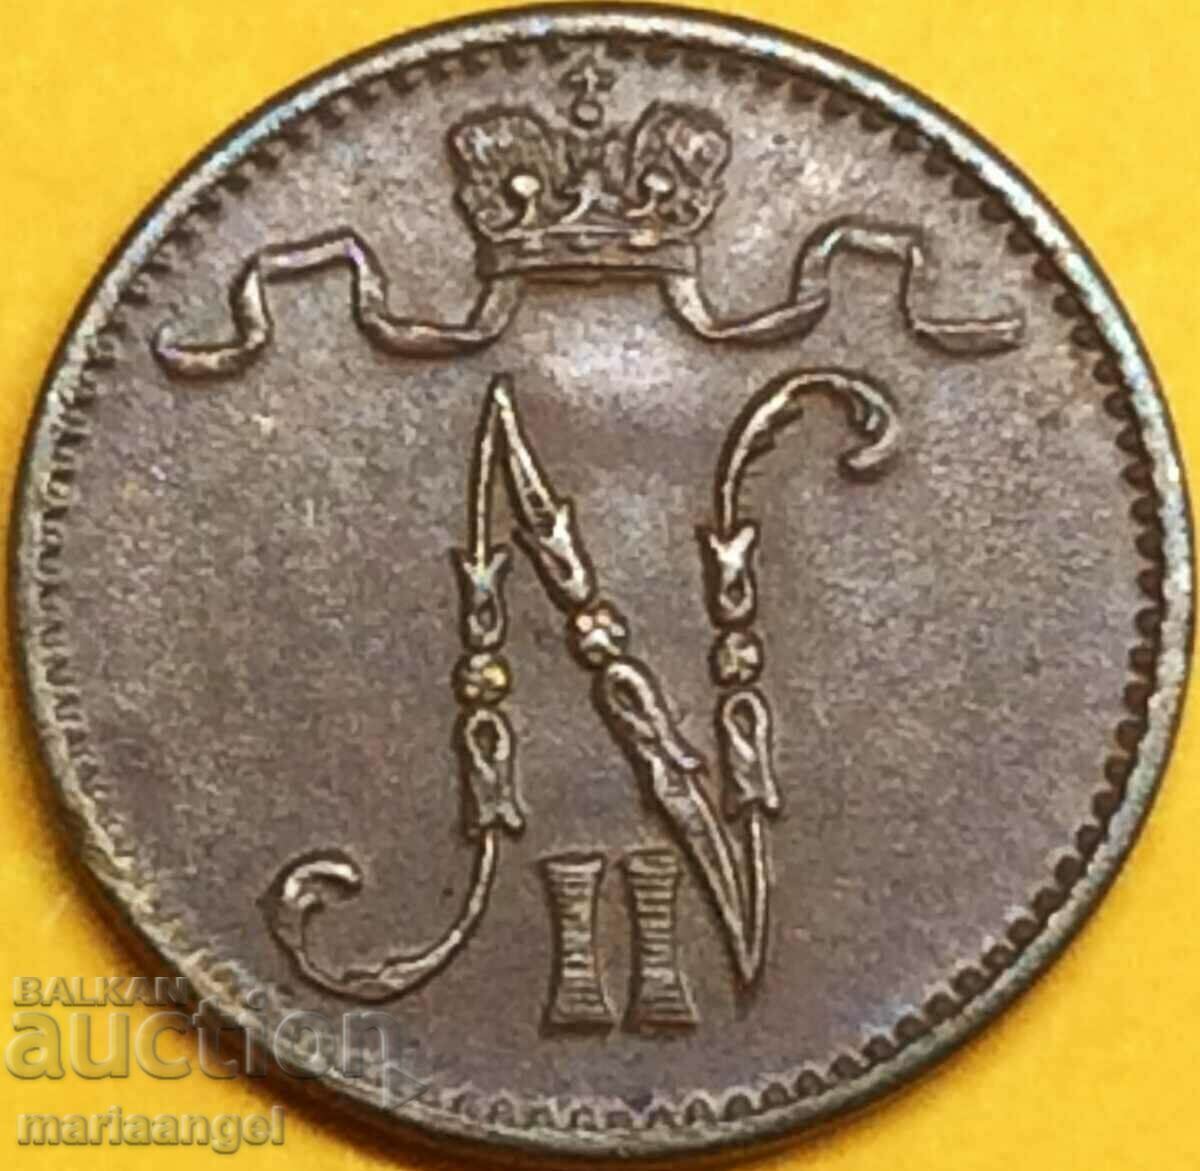 1 penny 1915 Russia to Finland UNC copper